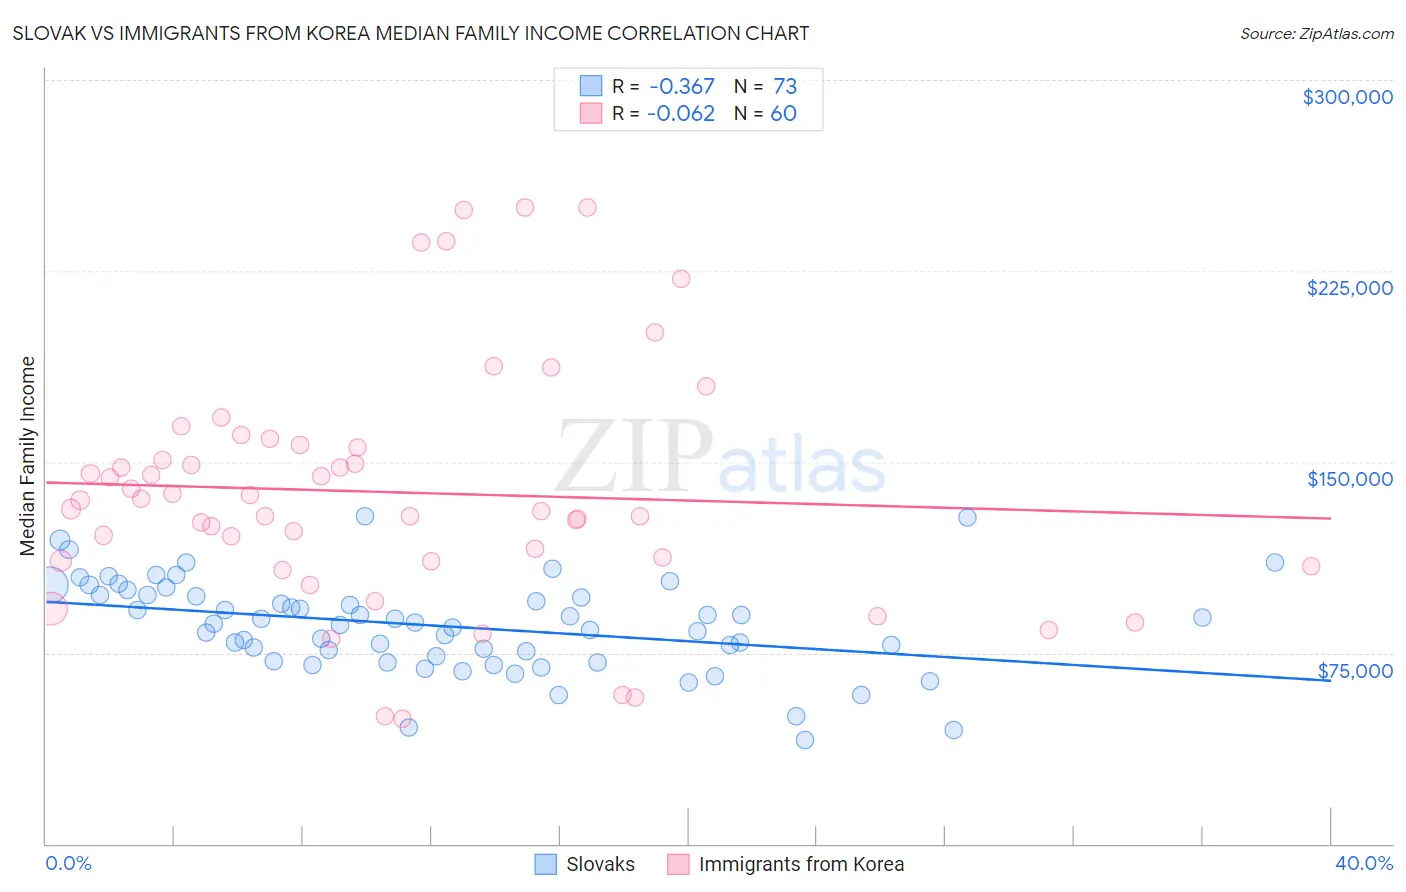 Slovak vs Immigrants from Korea Median Family Income